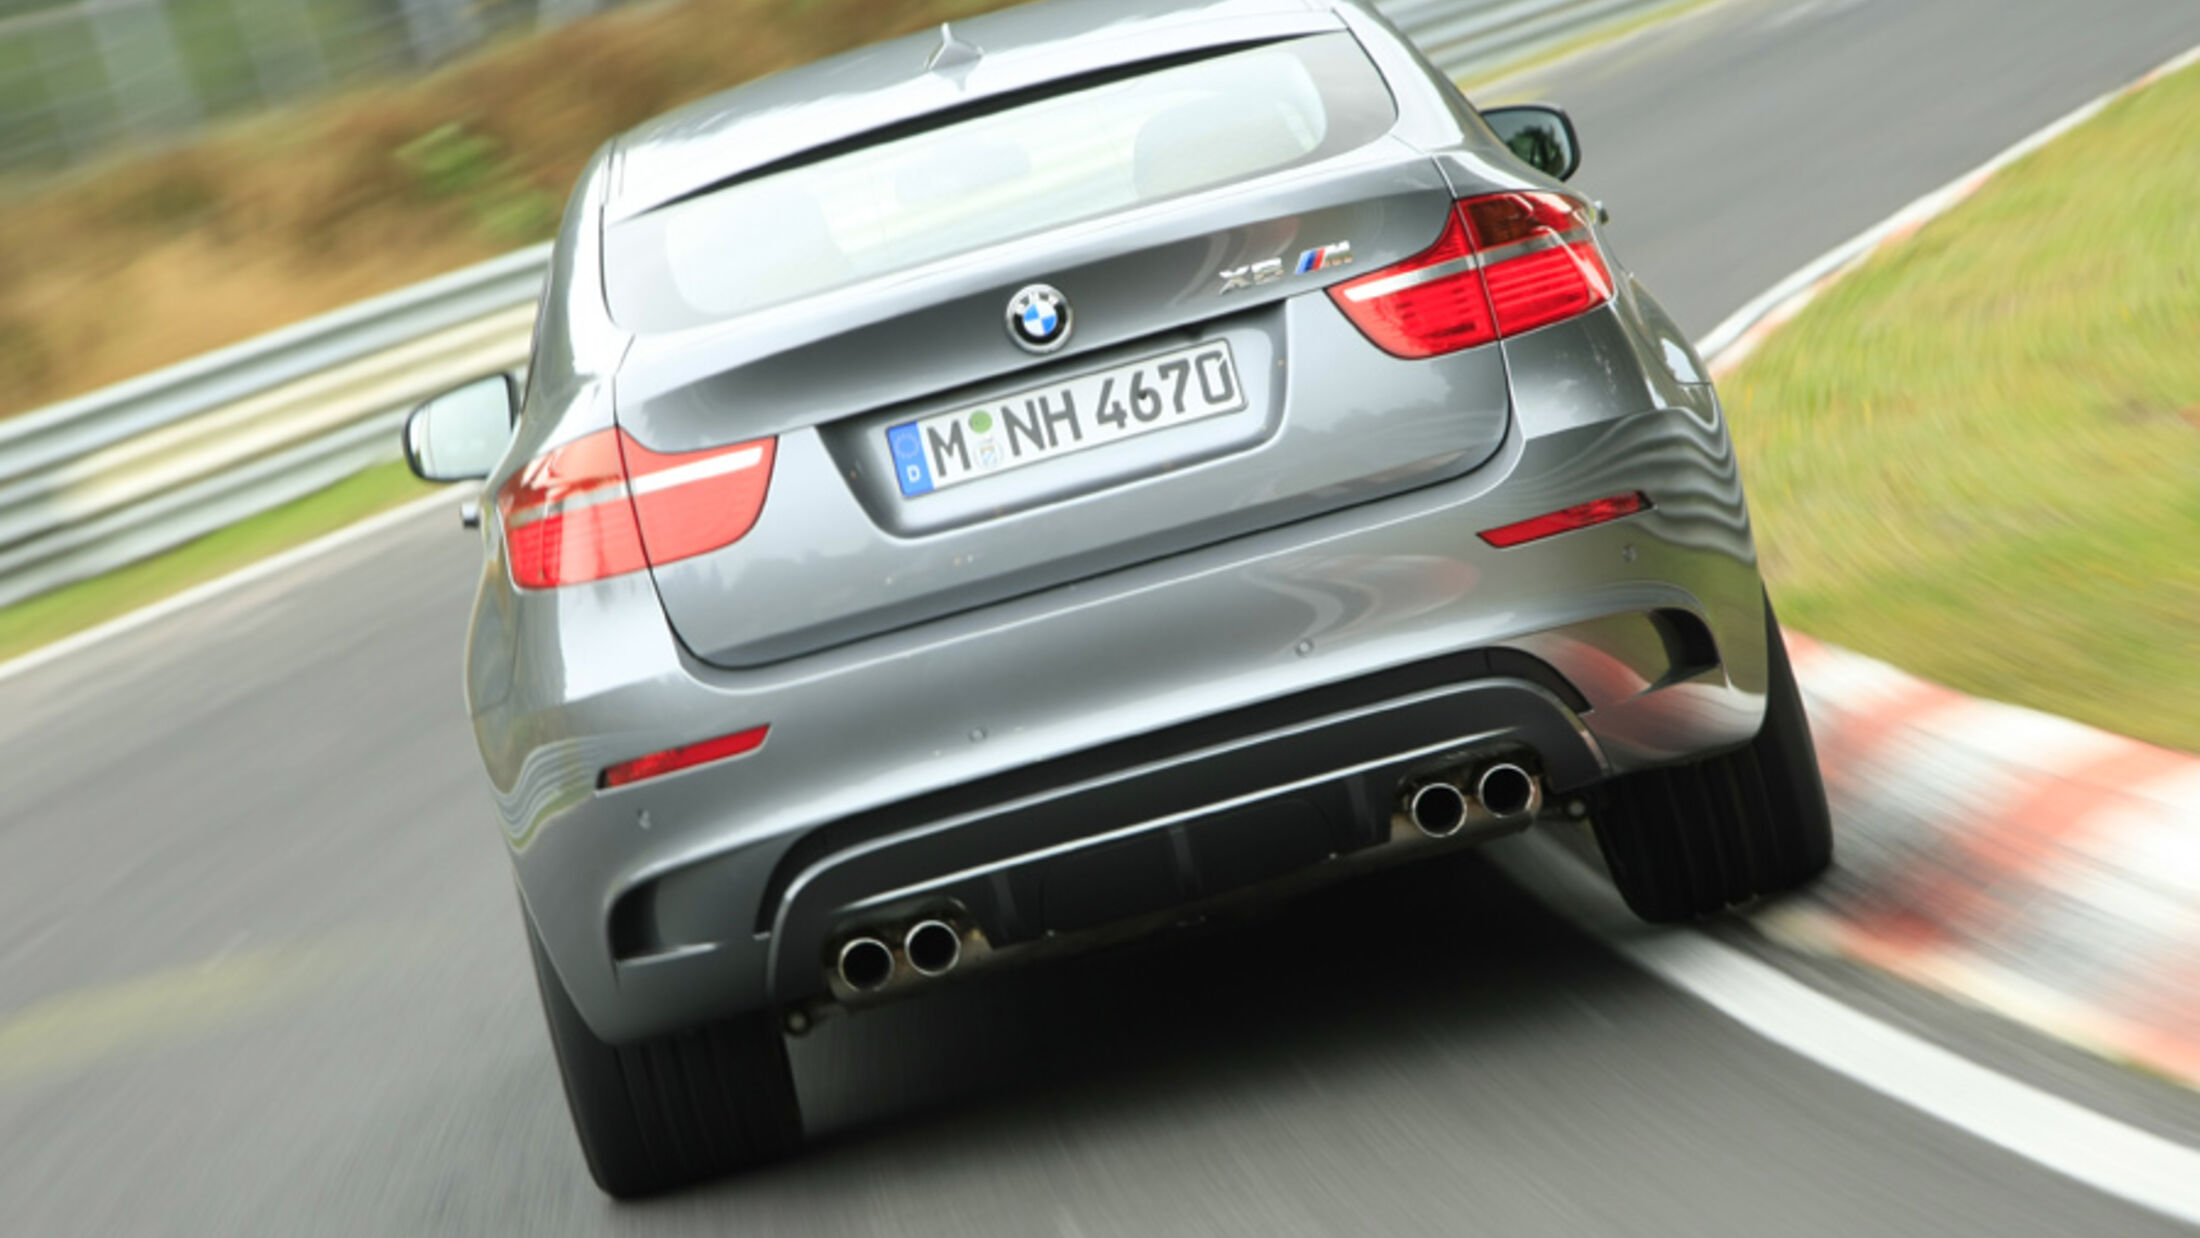 GEBRAUCHTWAGEN-CHECK  Wie gut ist der BMW X6 E71?